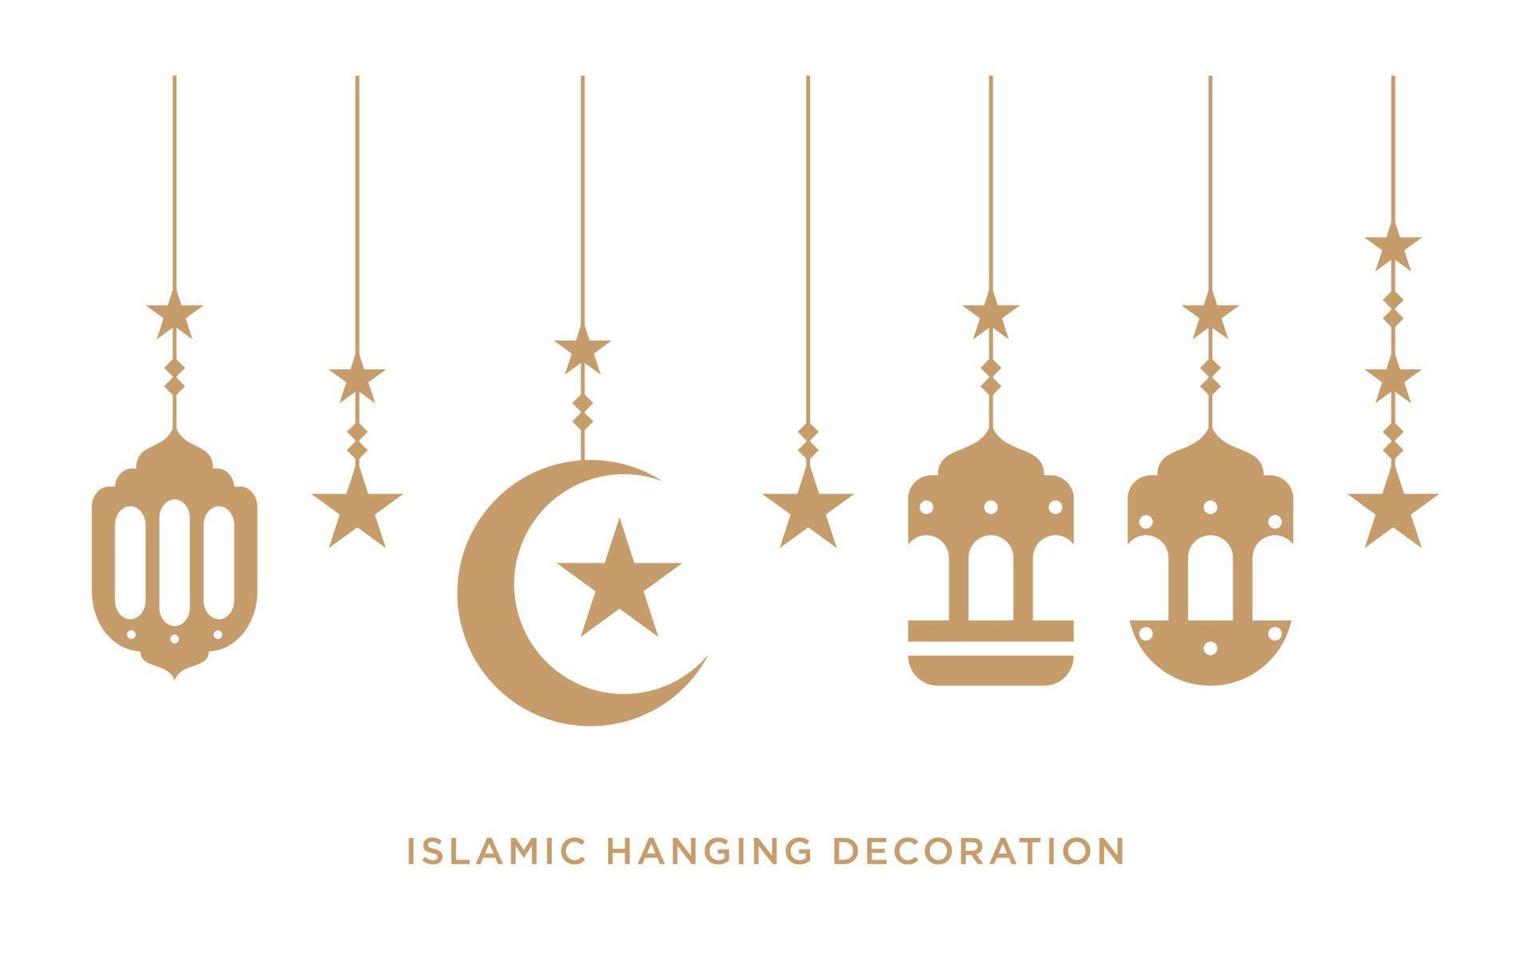 islámico plano colgando linterna decoración para Ramadán impresión y web vector diseño elemento